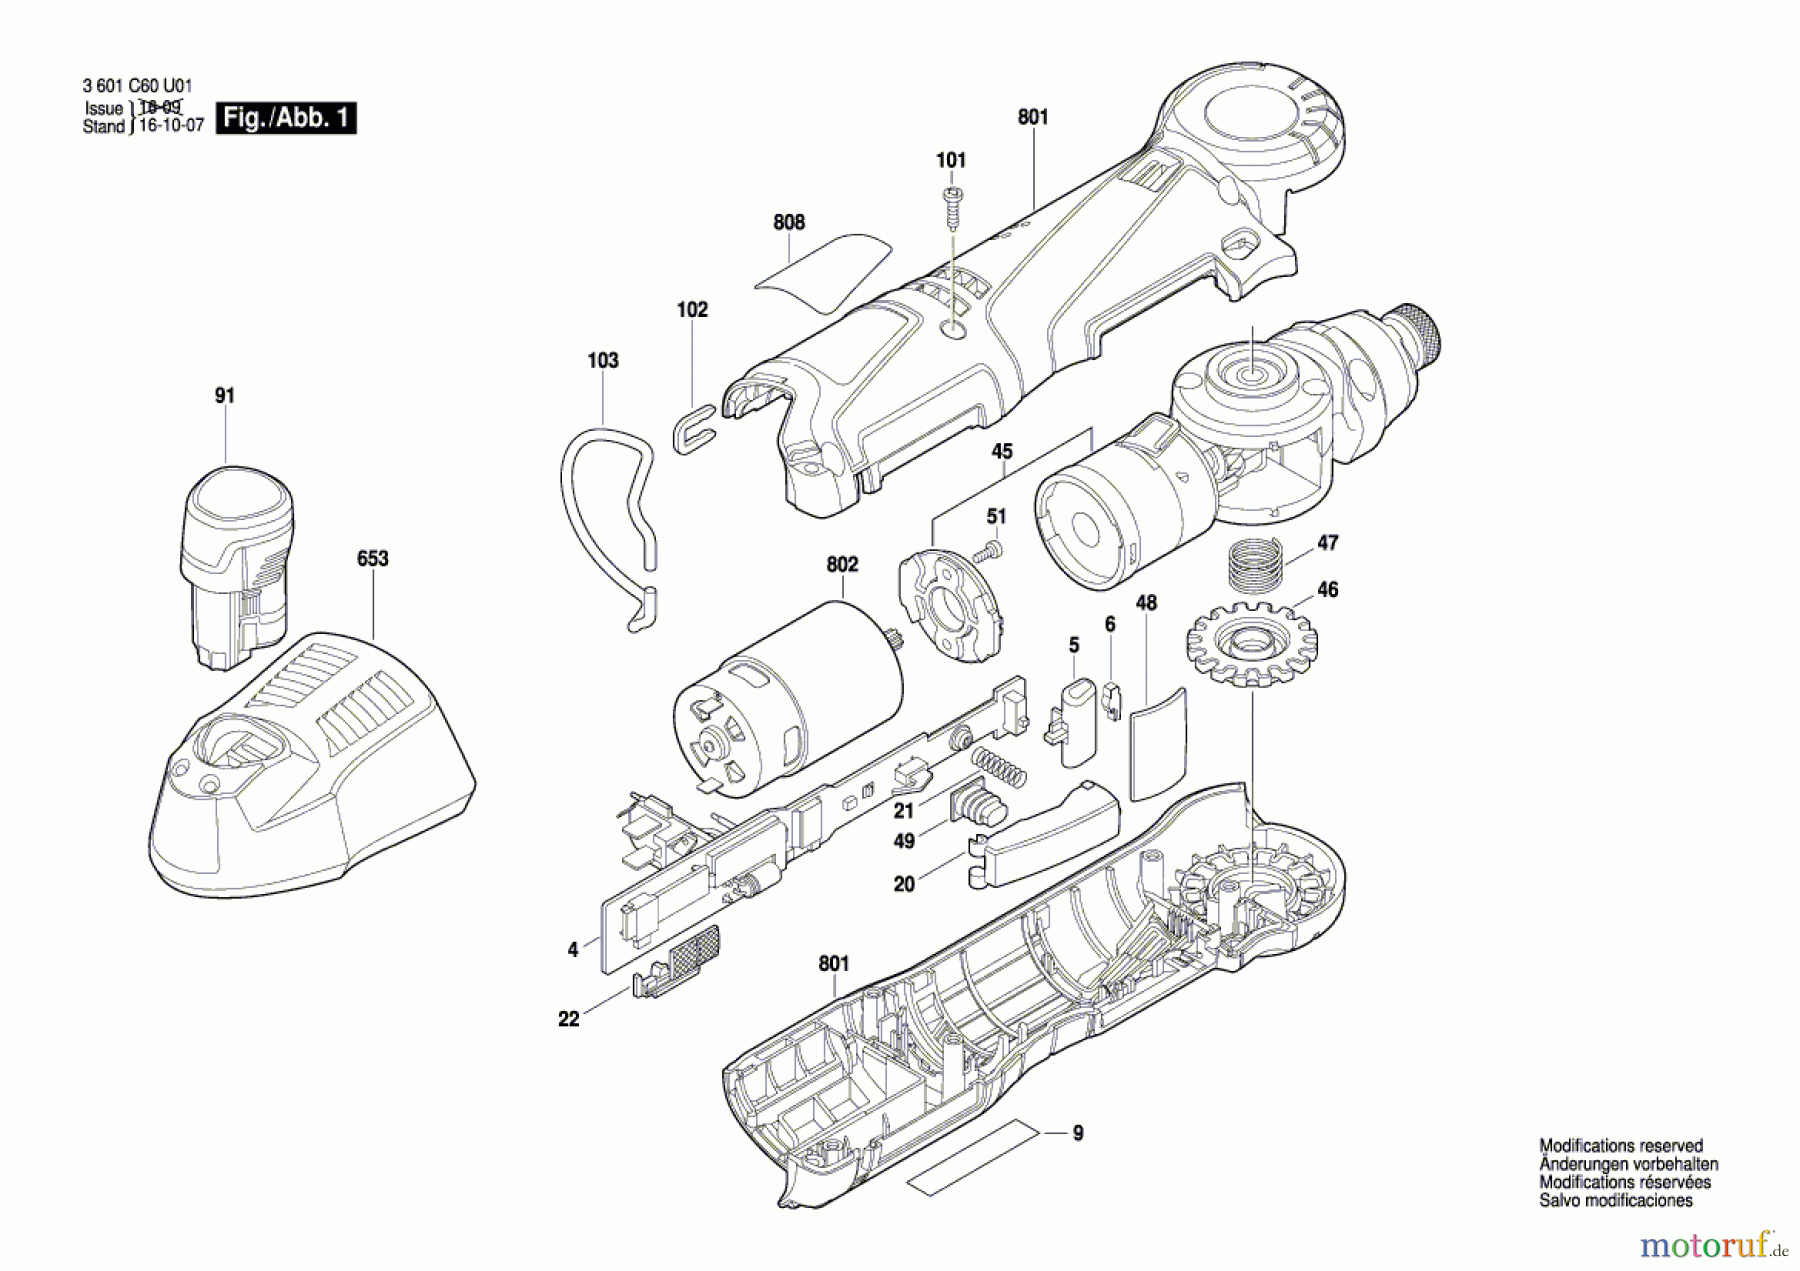  Bosch Werkzeug Winkelschrauber WB 12-A Seite 1